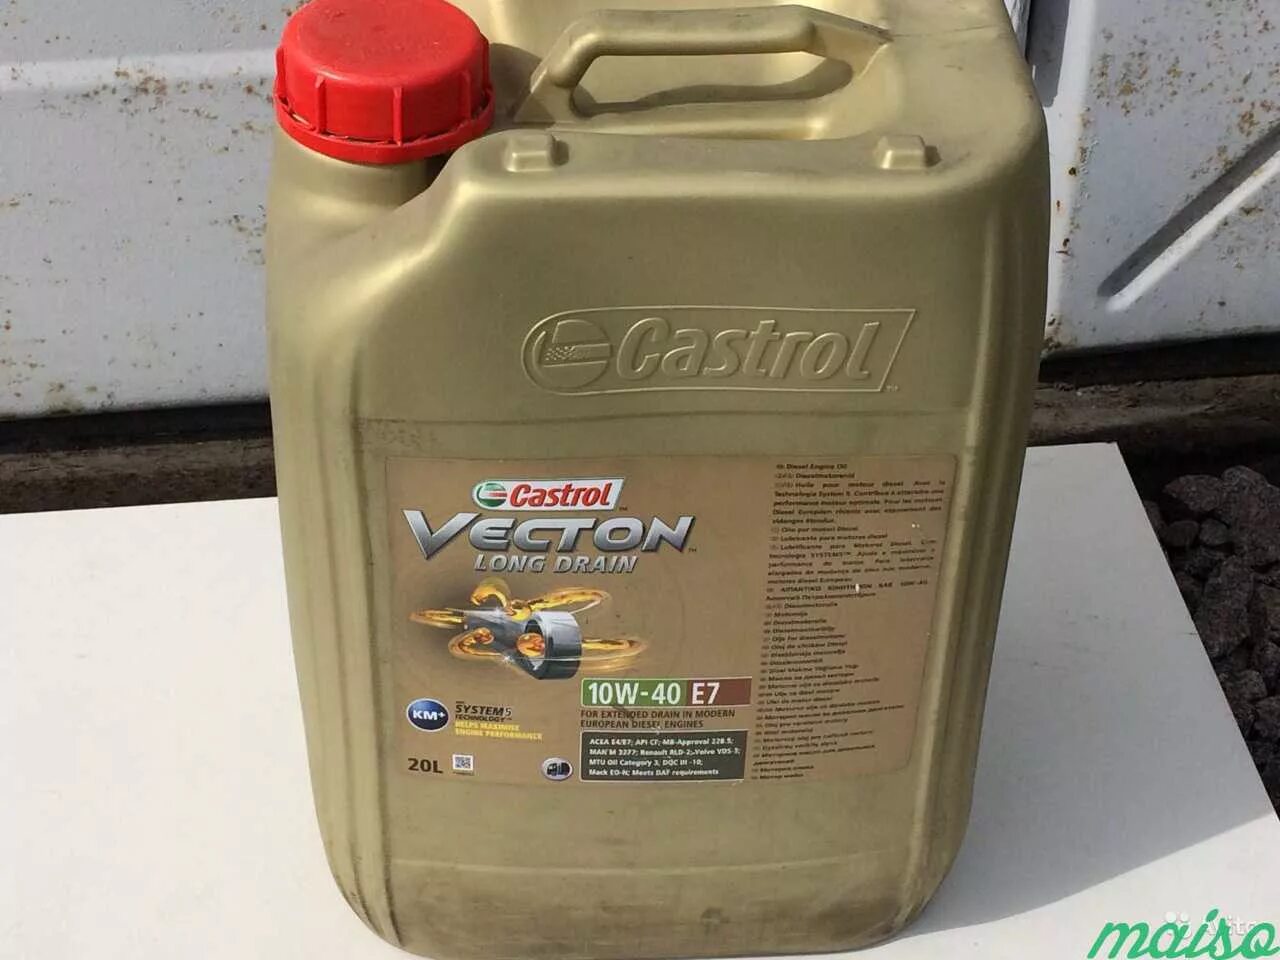 Купить моторное масло 20 литров. Масло Castrol Vecton 10w 40 полусинтетика. Castrol 10w 40 Diesel 20 литров. Масло Castrol Vecton 7 литров. Кастрол 10 в 40 20 литров.